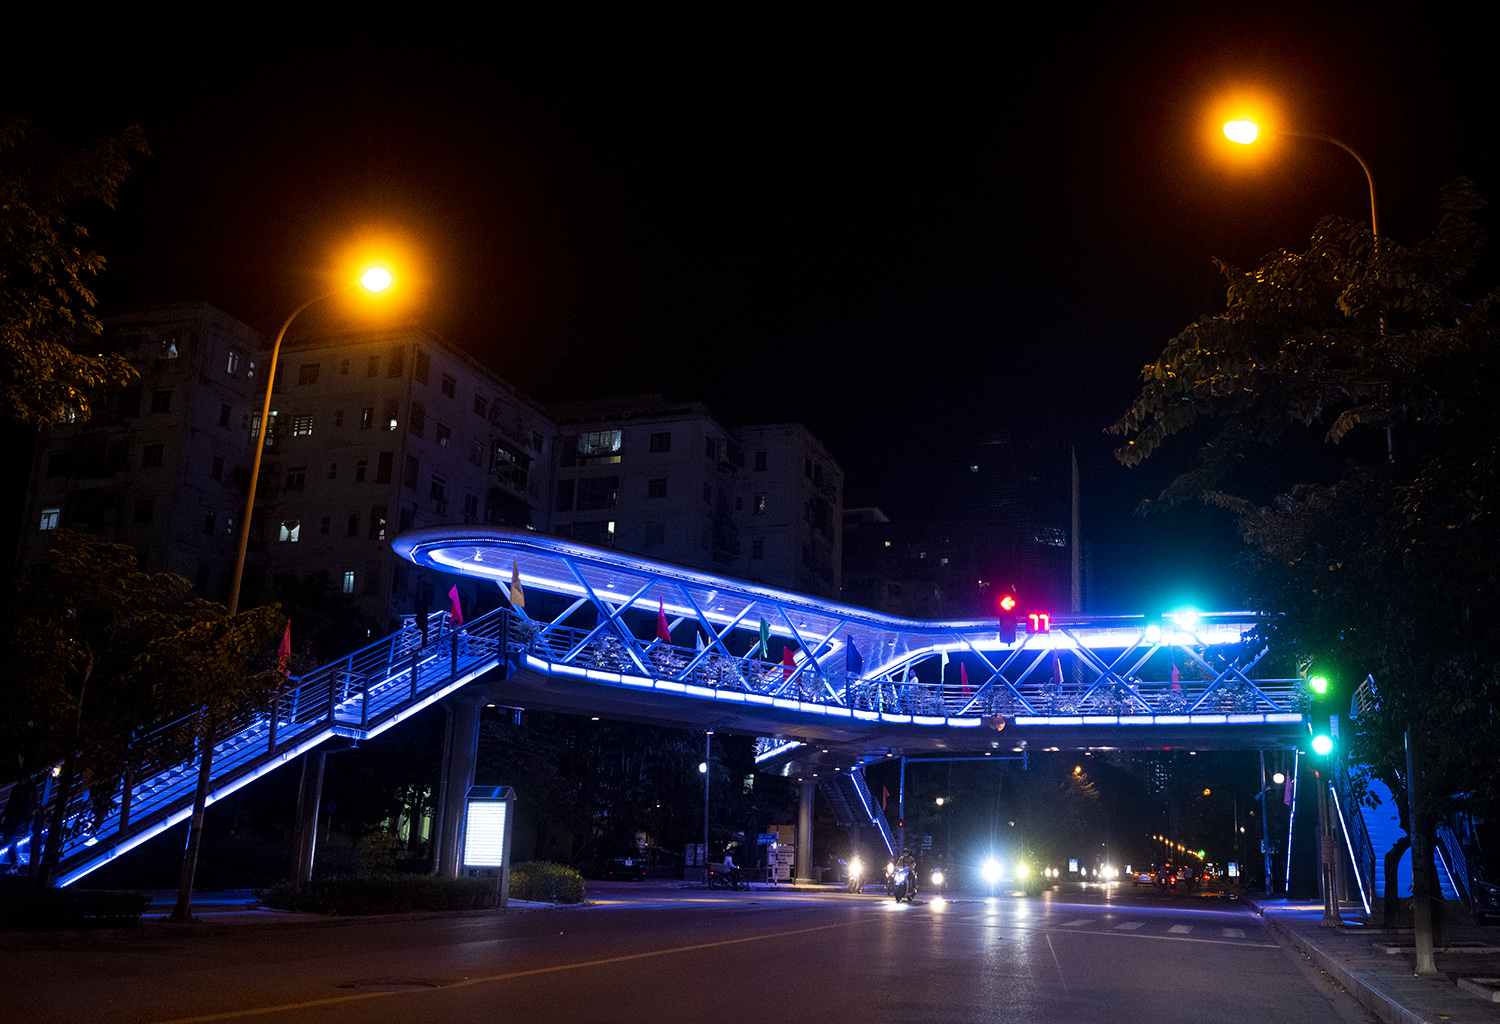 Cầu vượt hình chư Y là chiếc cầu vượt dành riêng cho người đi bộ có hình chữ Y lần đầu tiên xây dựng ở Hà Nội, được xây dựng tại nút giao thông ngã ba đường Hoàng Minh Giám - Nguyễn Thị Thập (Thanh Xuân, Hà Nội).